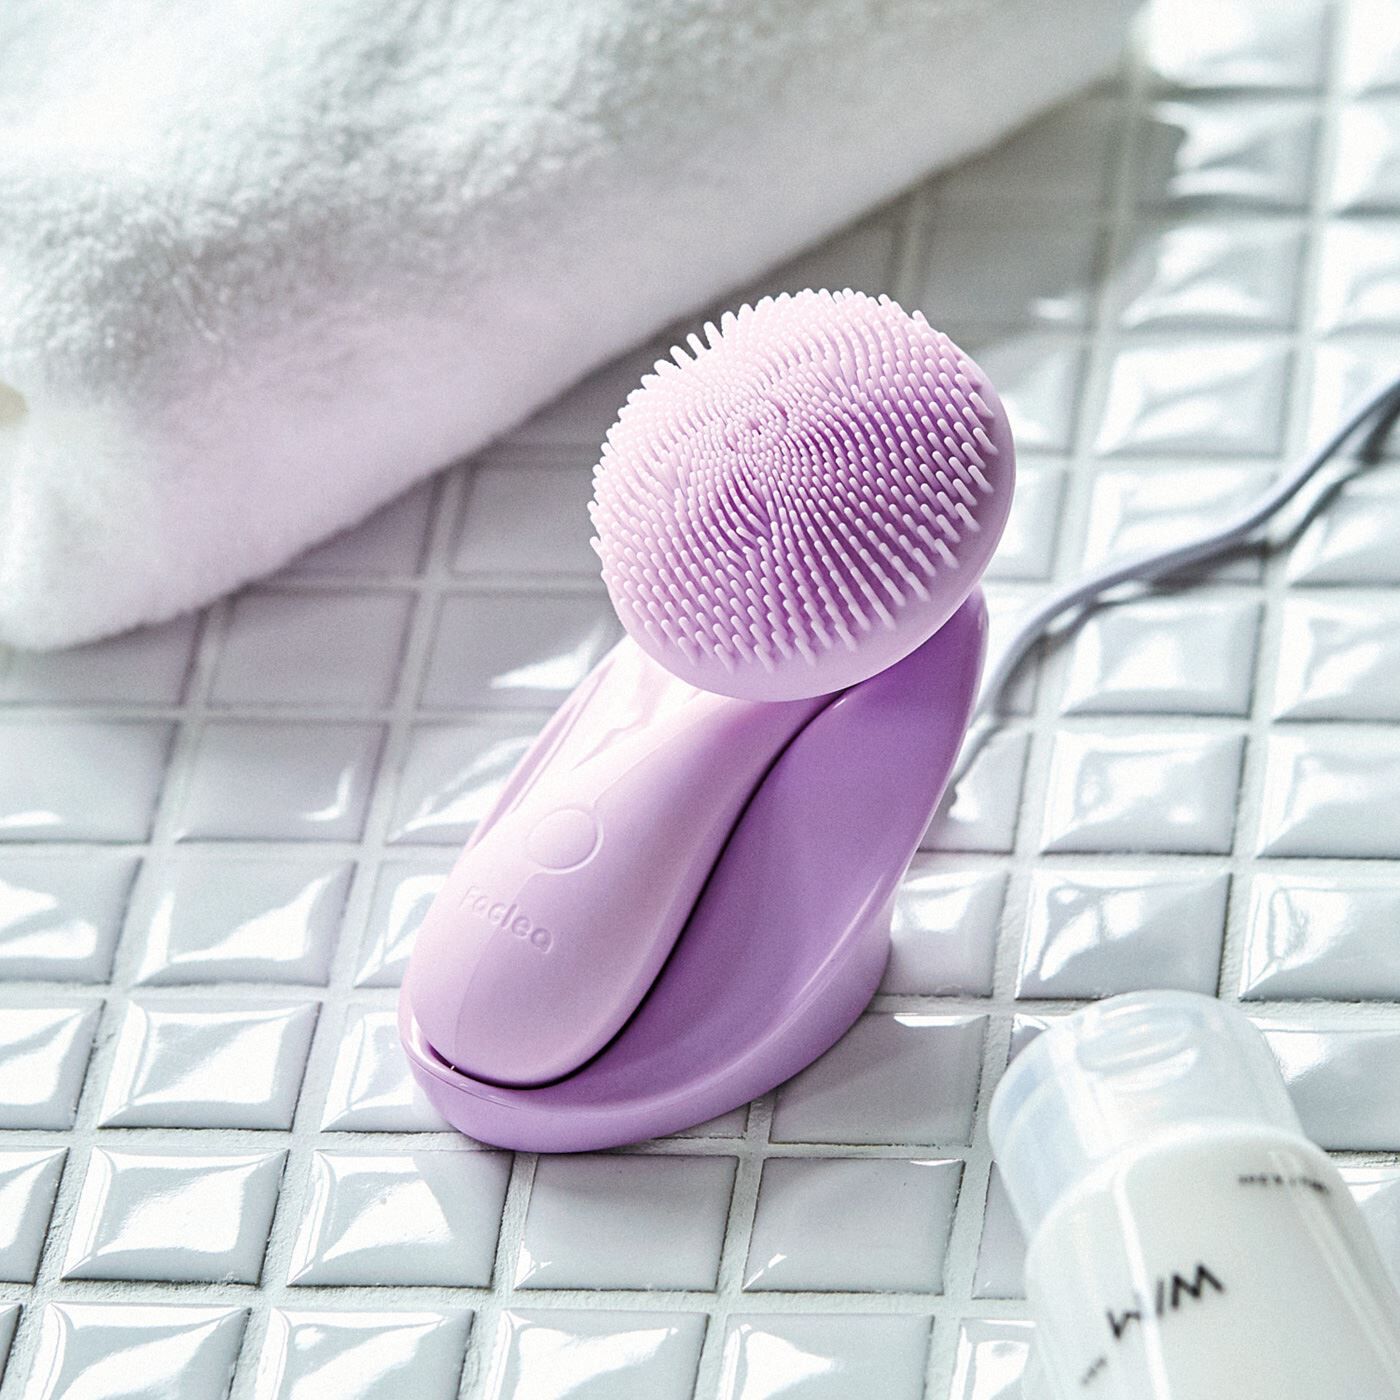 flufeel|新感覚の磁気と音波振動　濃密泡ですっきり洗う うねって揺れ動く洗顔ブラシ〈パープル〉|オン・オフとモードチェンジもスイッチひとつ。ブラシ部分はやわらかなシリコーンで、丸洗いできます。